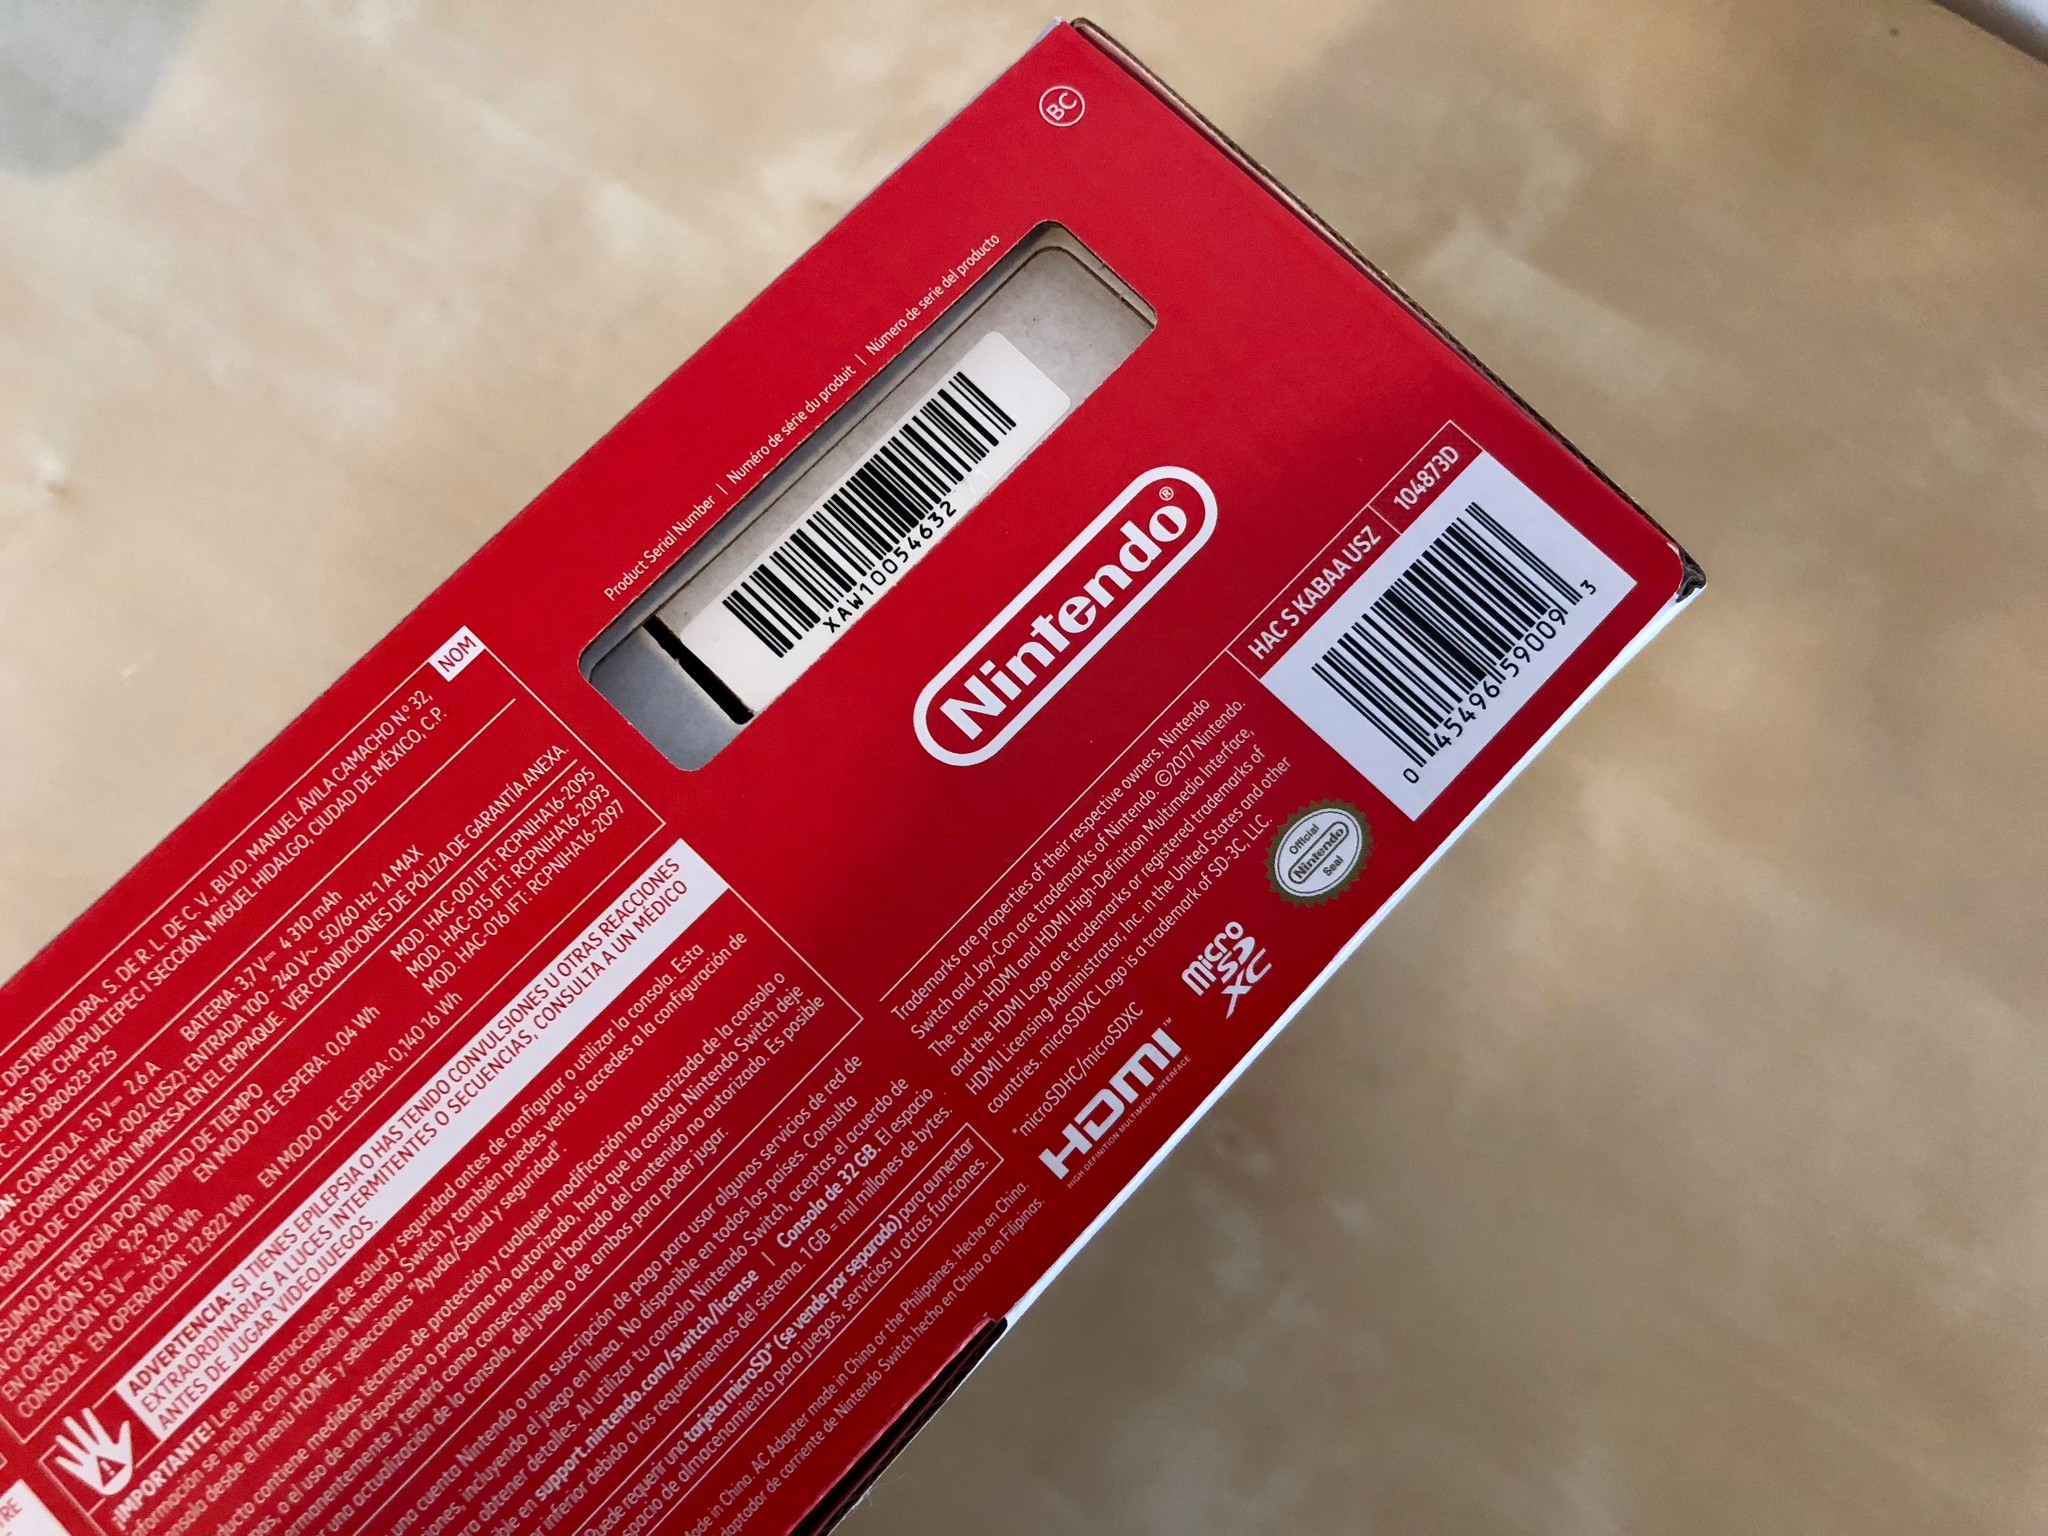 Nintendo switch code. Серийный номер Nintendo Switch. Nintendo Switch Lite серийный номер. Серийник Нинтендо свитч. Серийный номер на коробке Нинтендо.